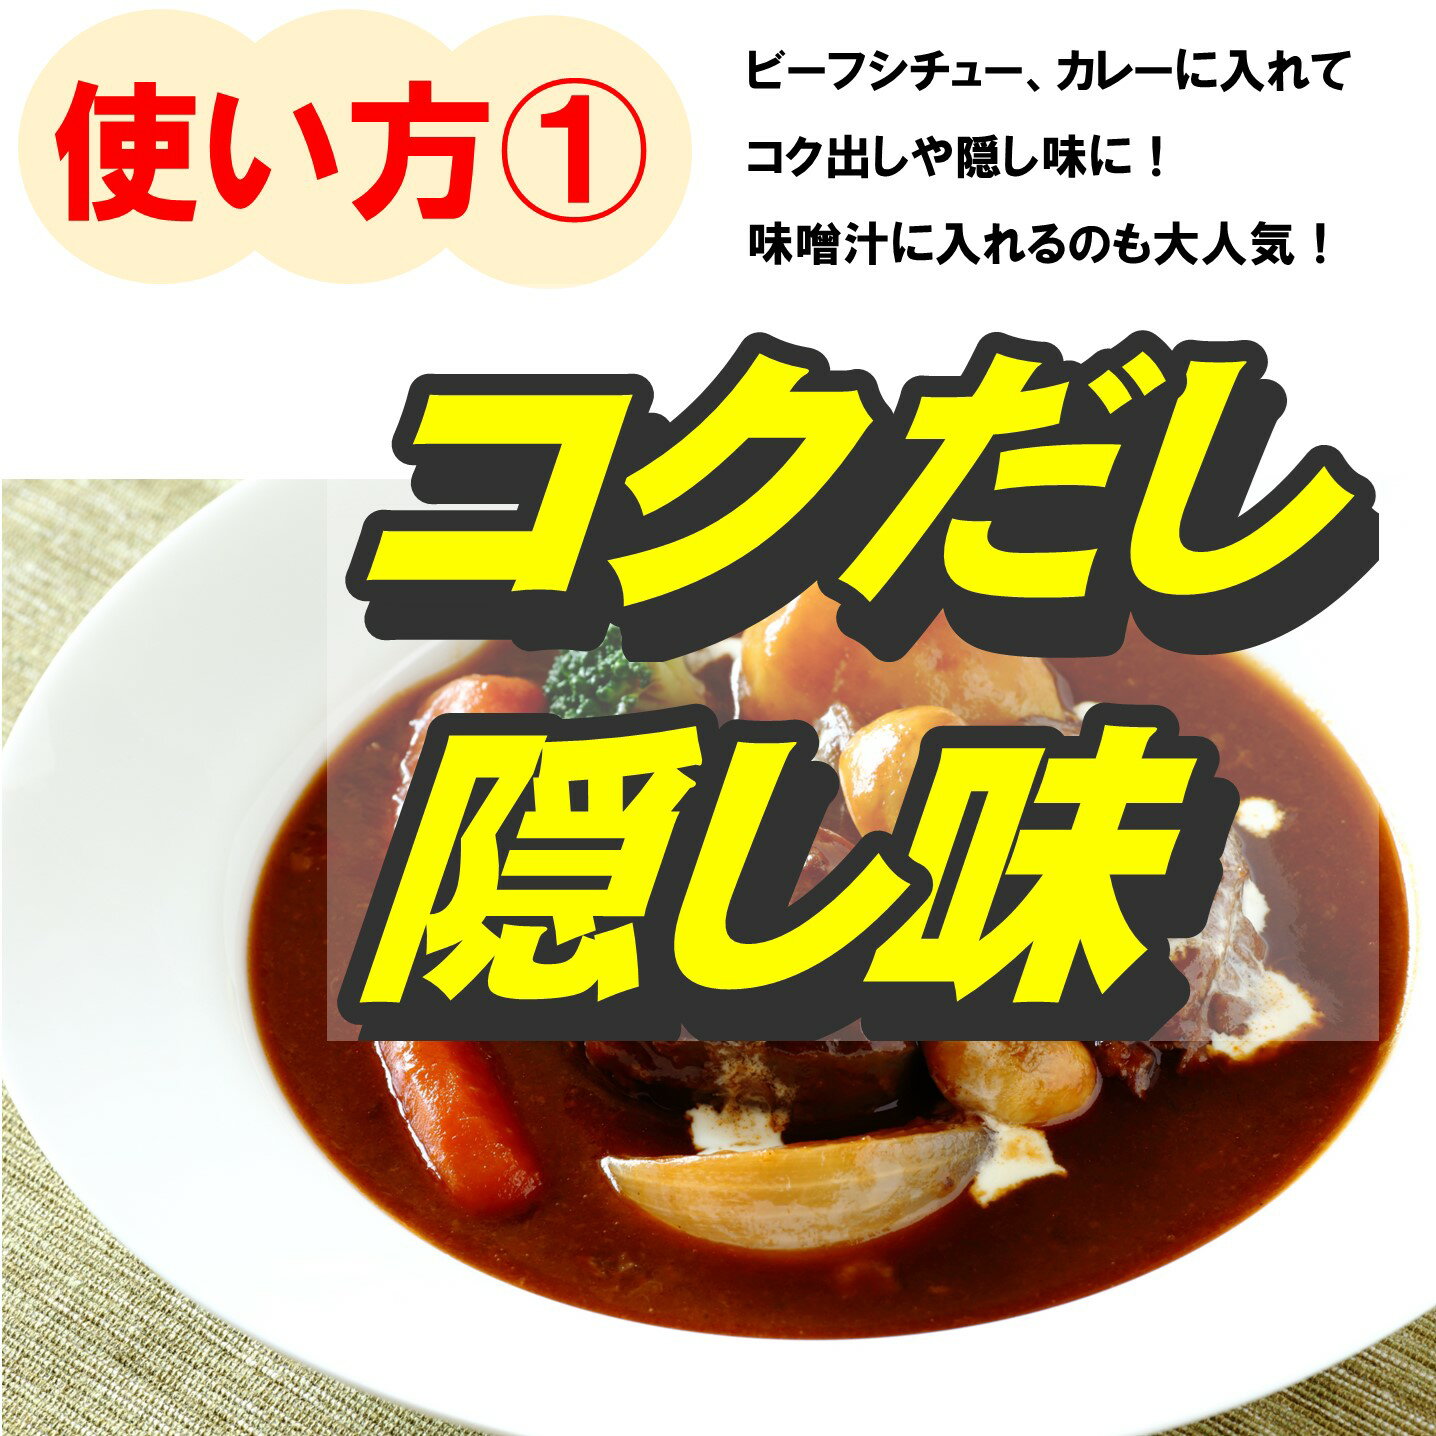 【4箱セット】カゴメ トマトペーストミニパック 18g×6袋入り 離乳食 ベビーフード 3